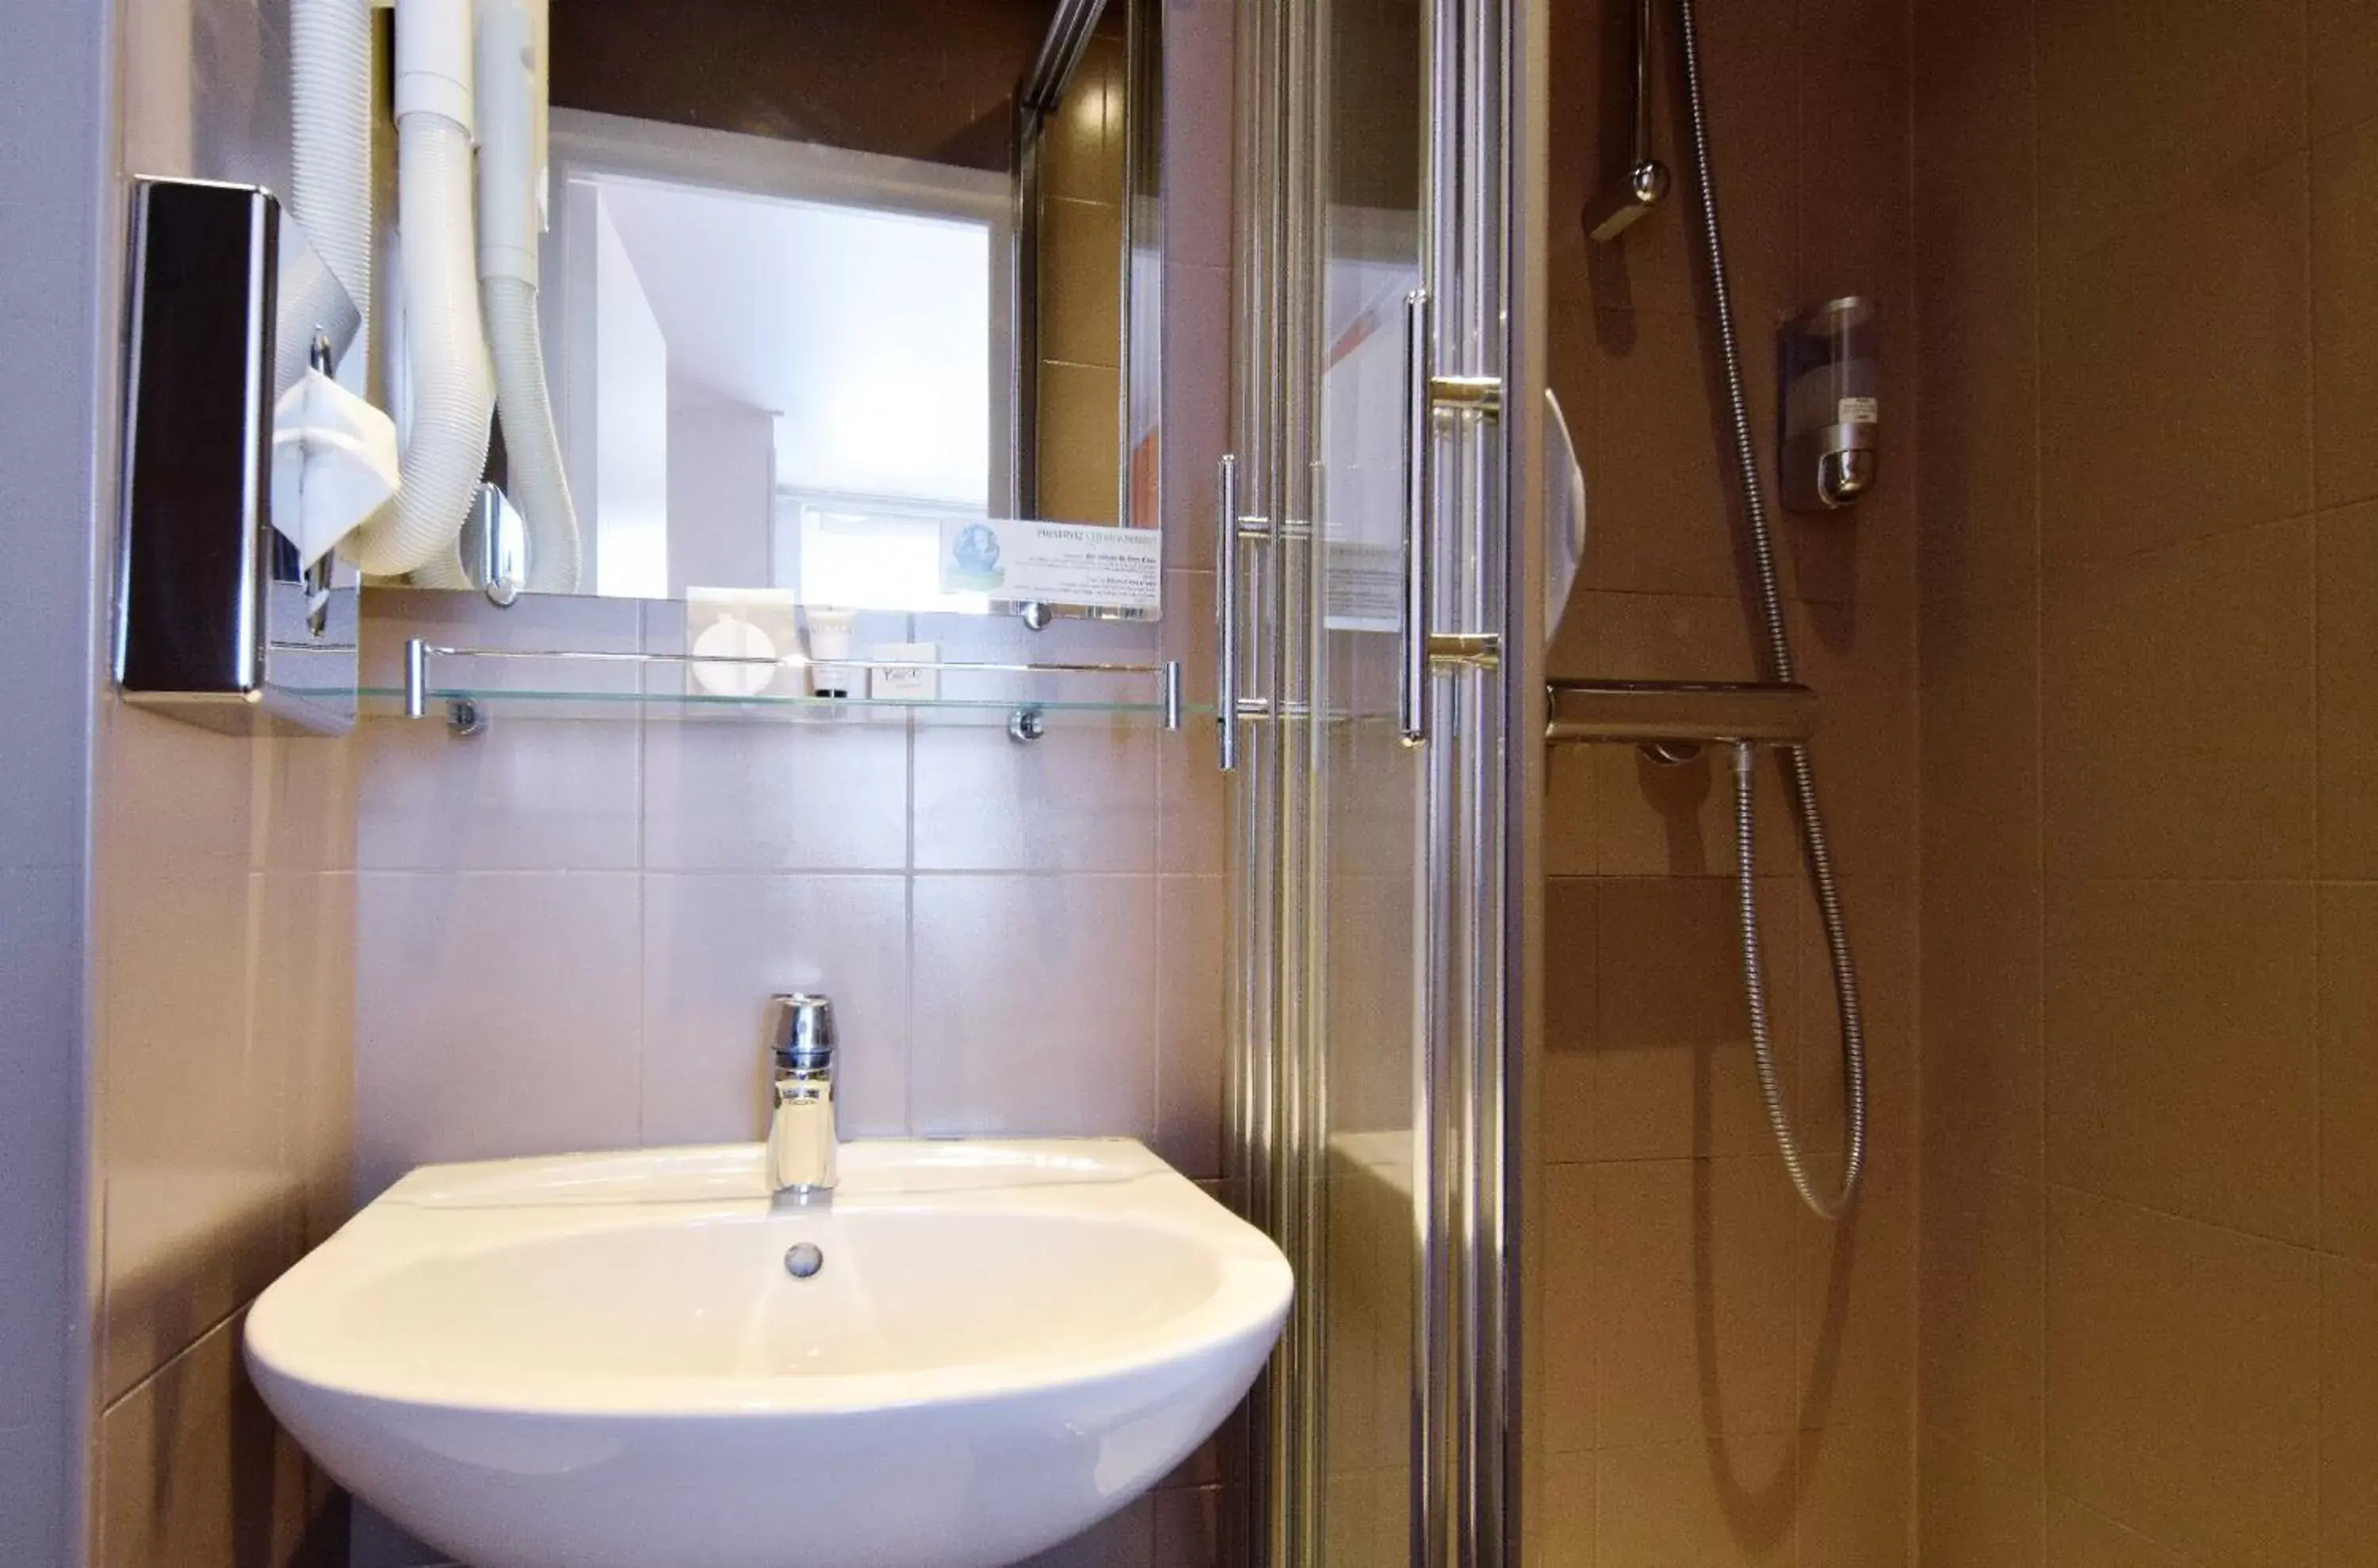 Shower, Bathroom in Alyss Saphir Cambronne Eiffel